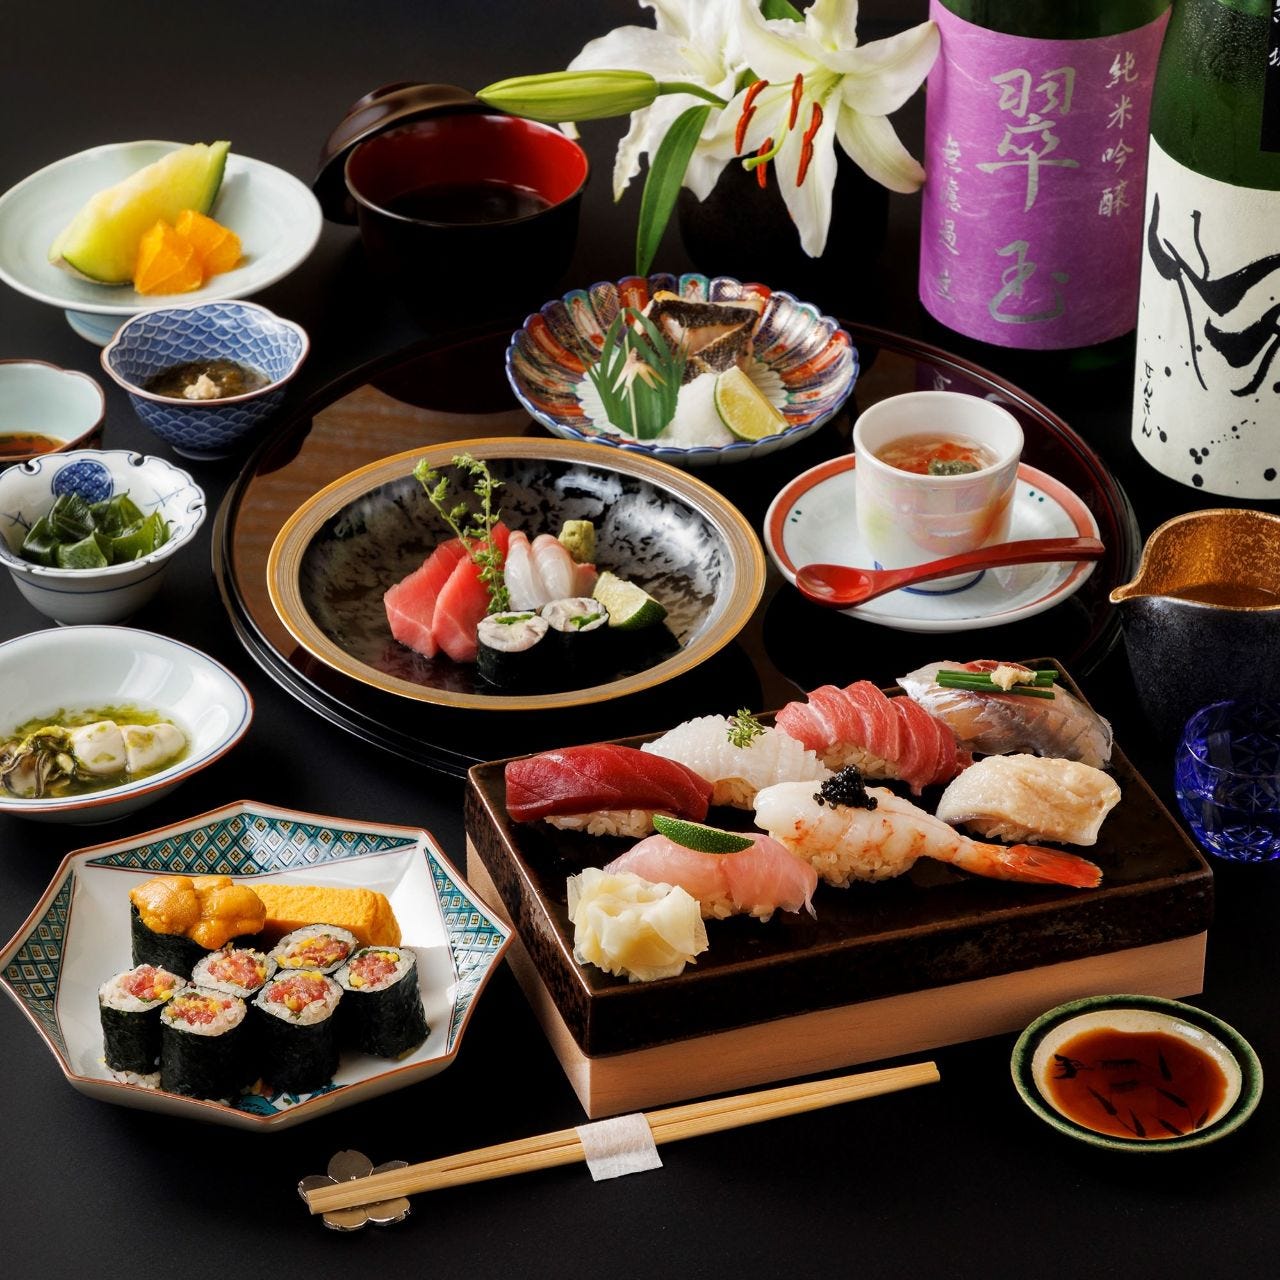 厳選した旬のネタを江戸前寿司で
堪能する本日のおまかせコース